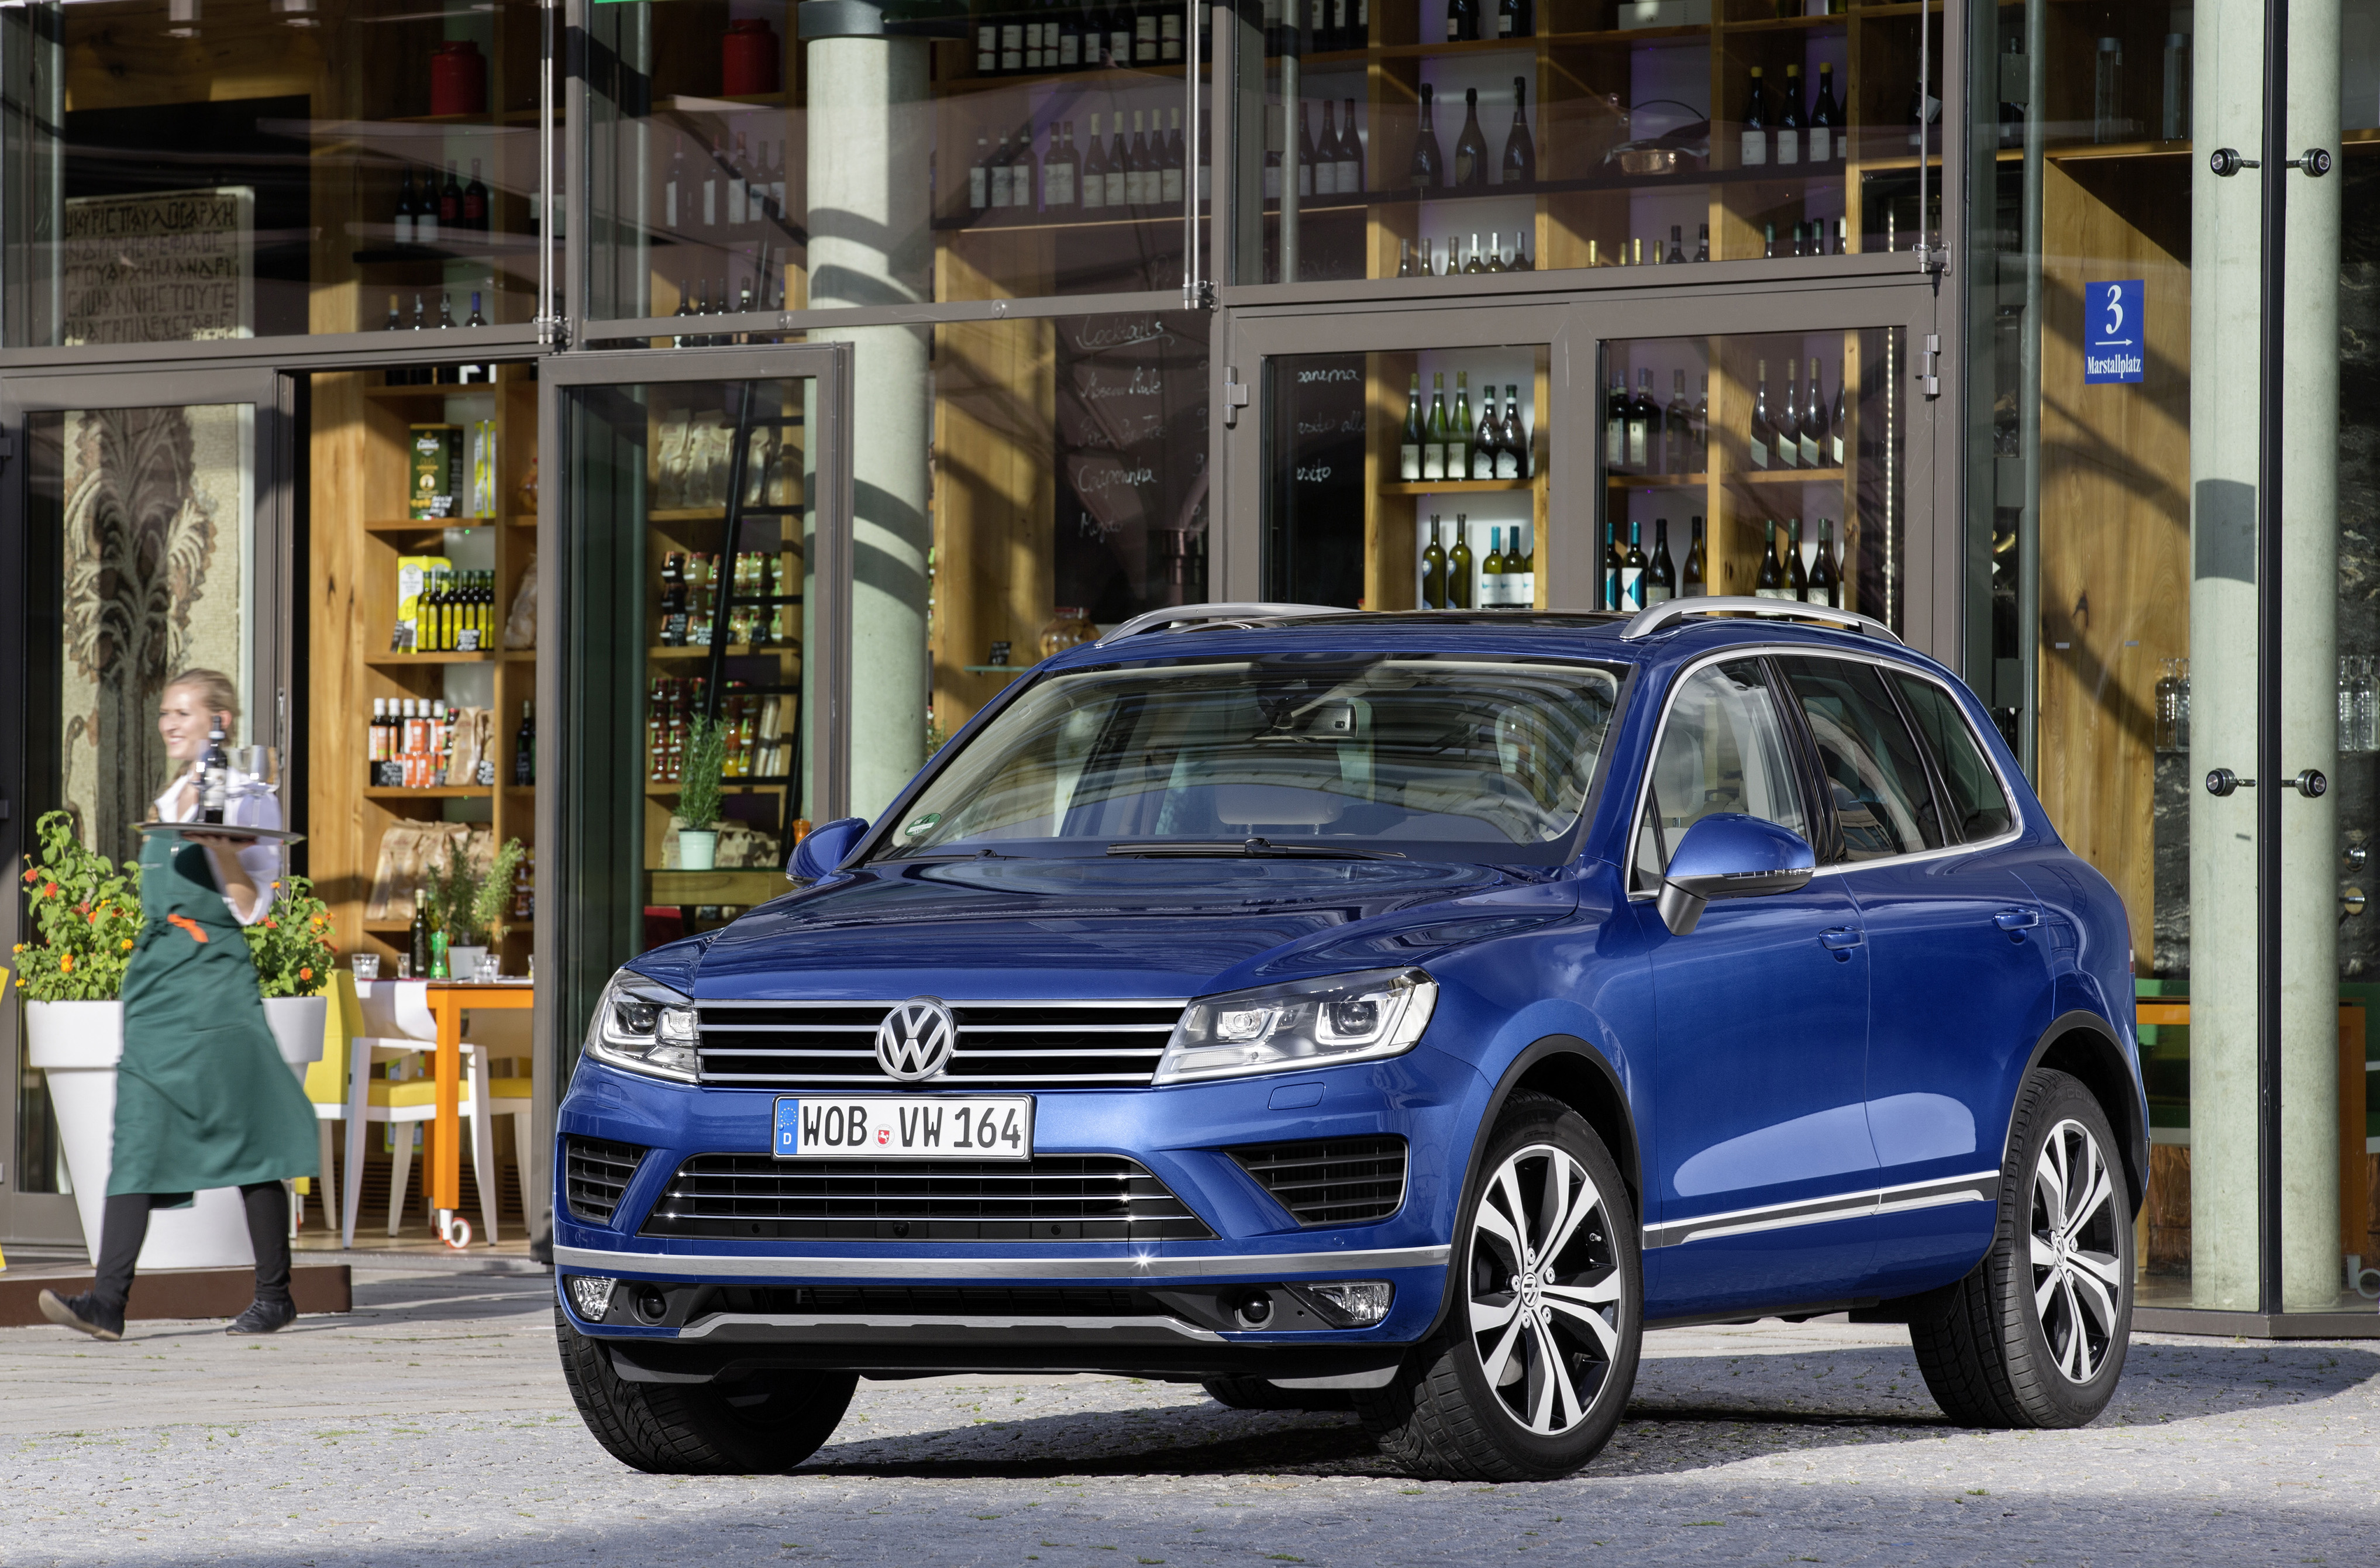 Niemcy wprowadzają do Polski nowy model 4x4. Volkswagen